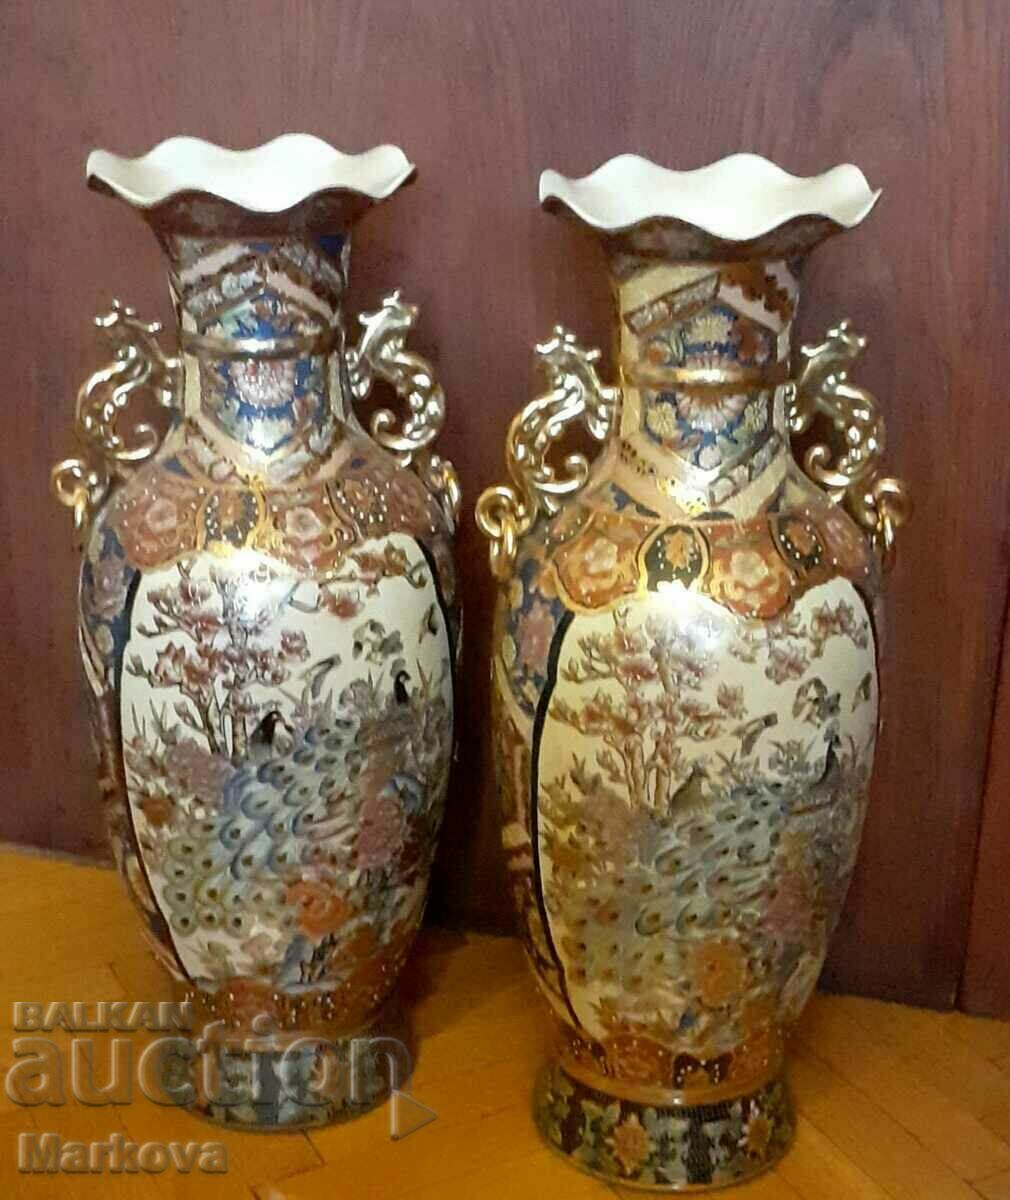 Interior ceramic Chinese vases